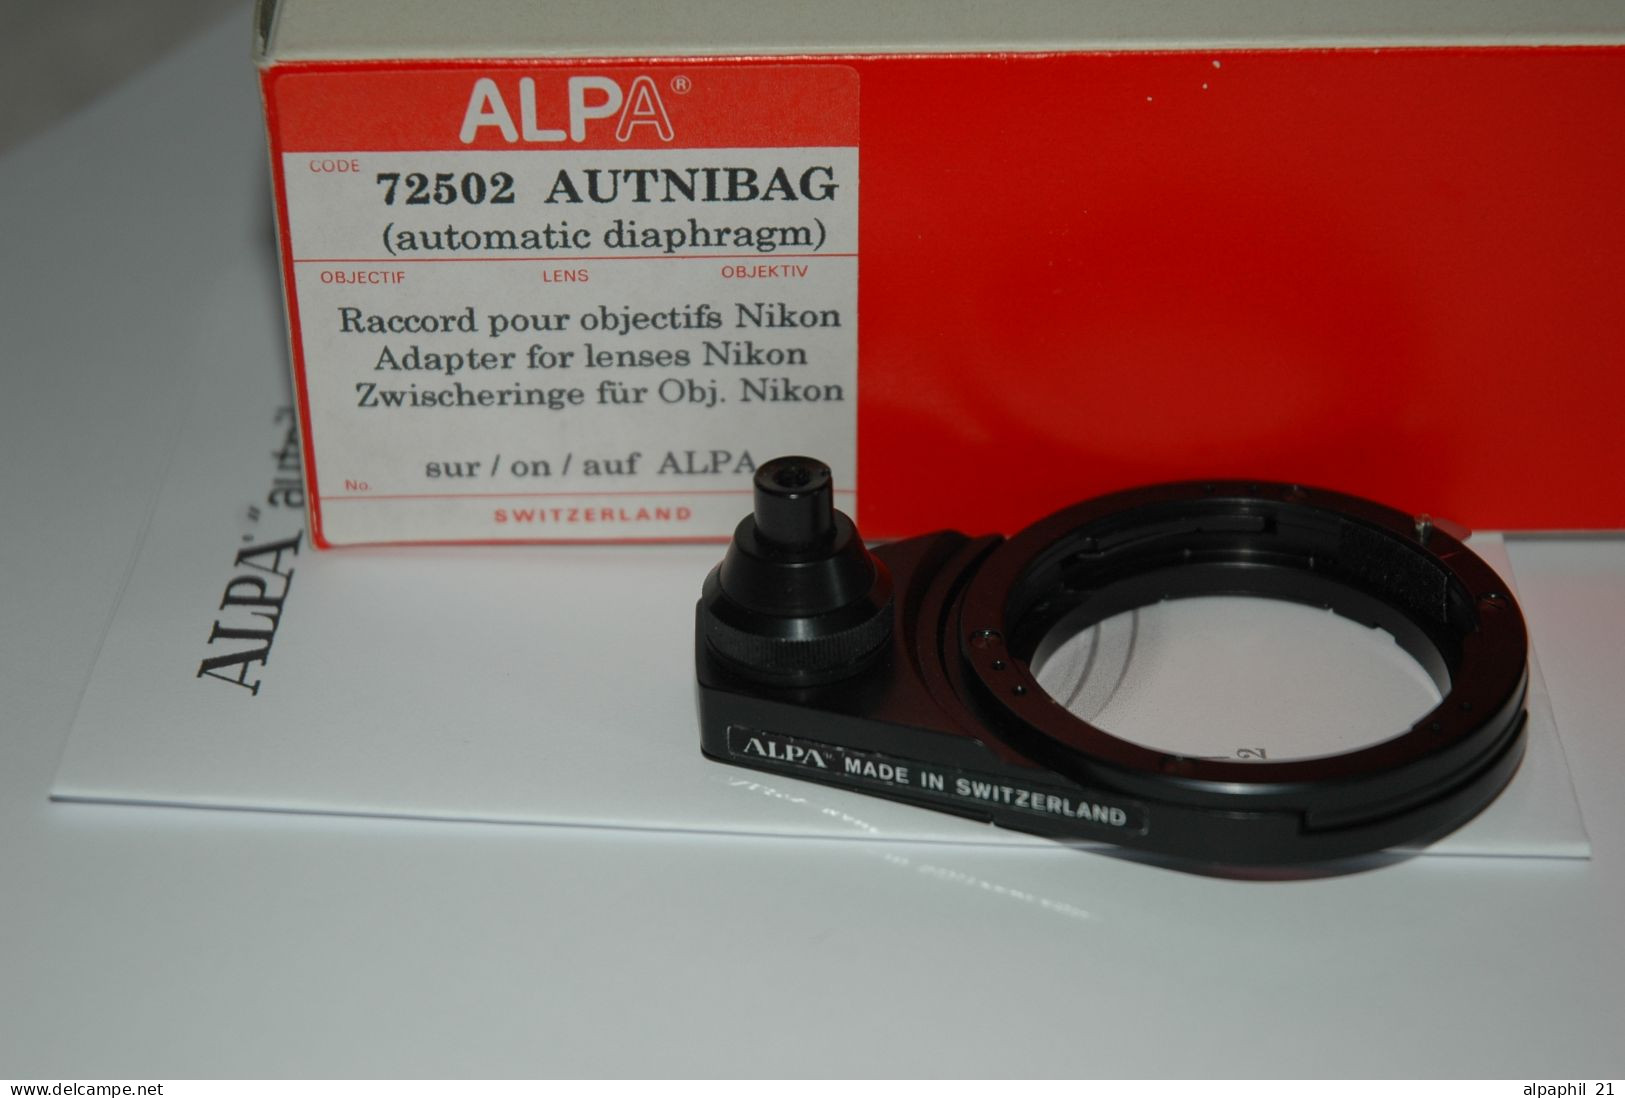 Alpa Autnibag "72502" - Material Y Accesorios